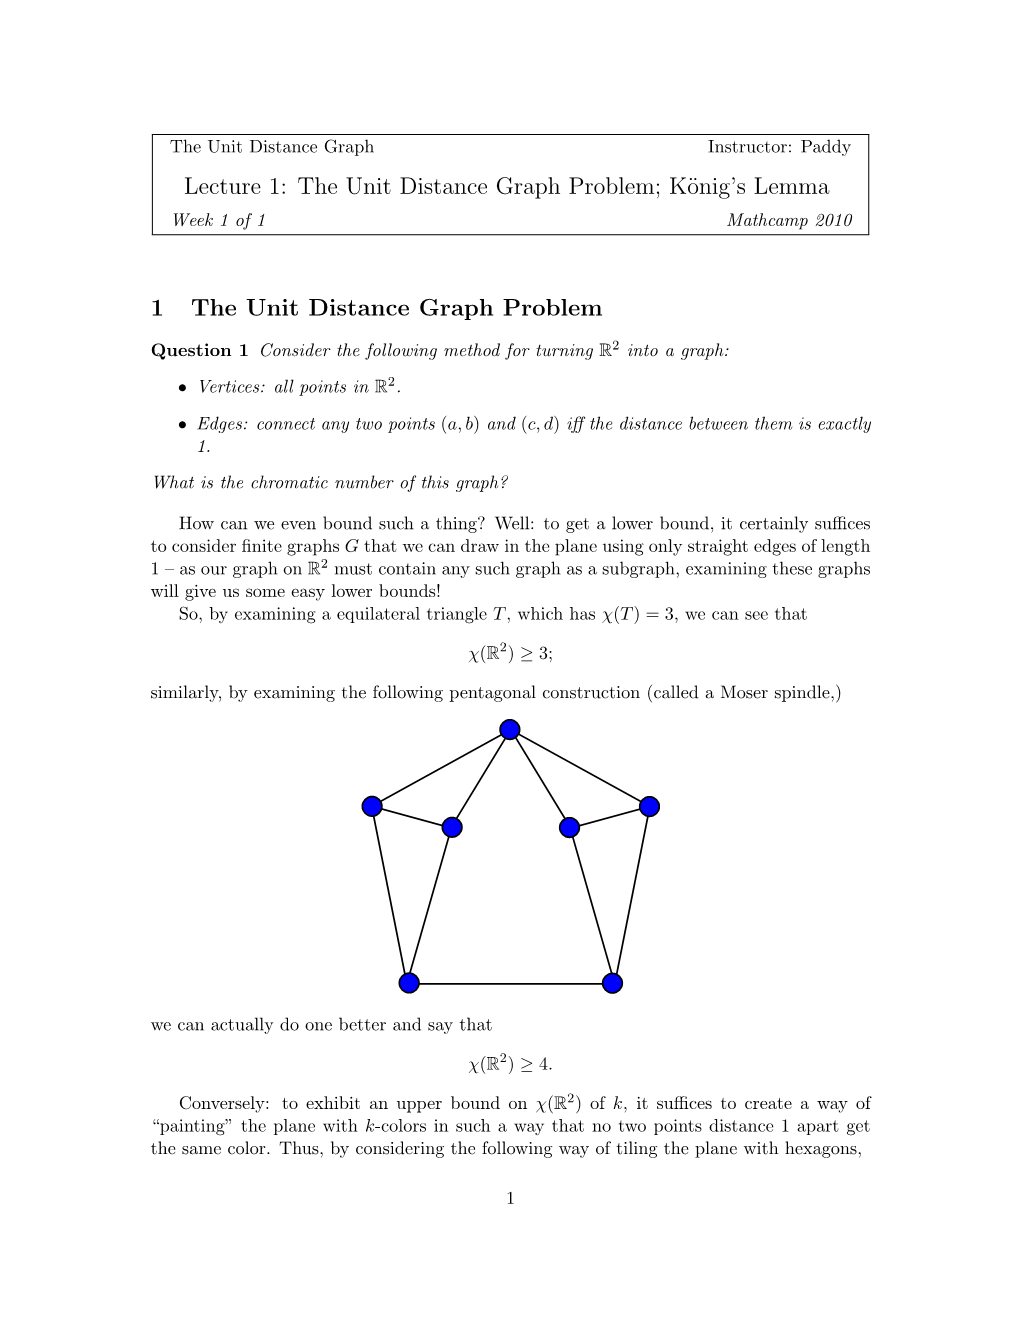 König's Lemma 1 the Unit Distance Graph Problem